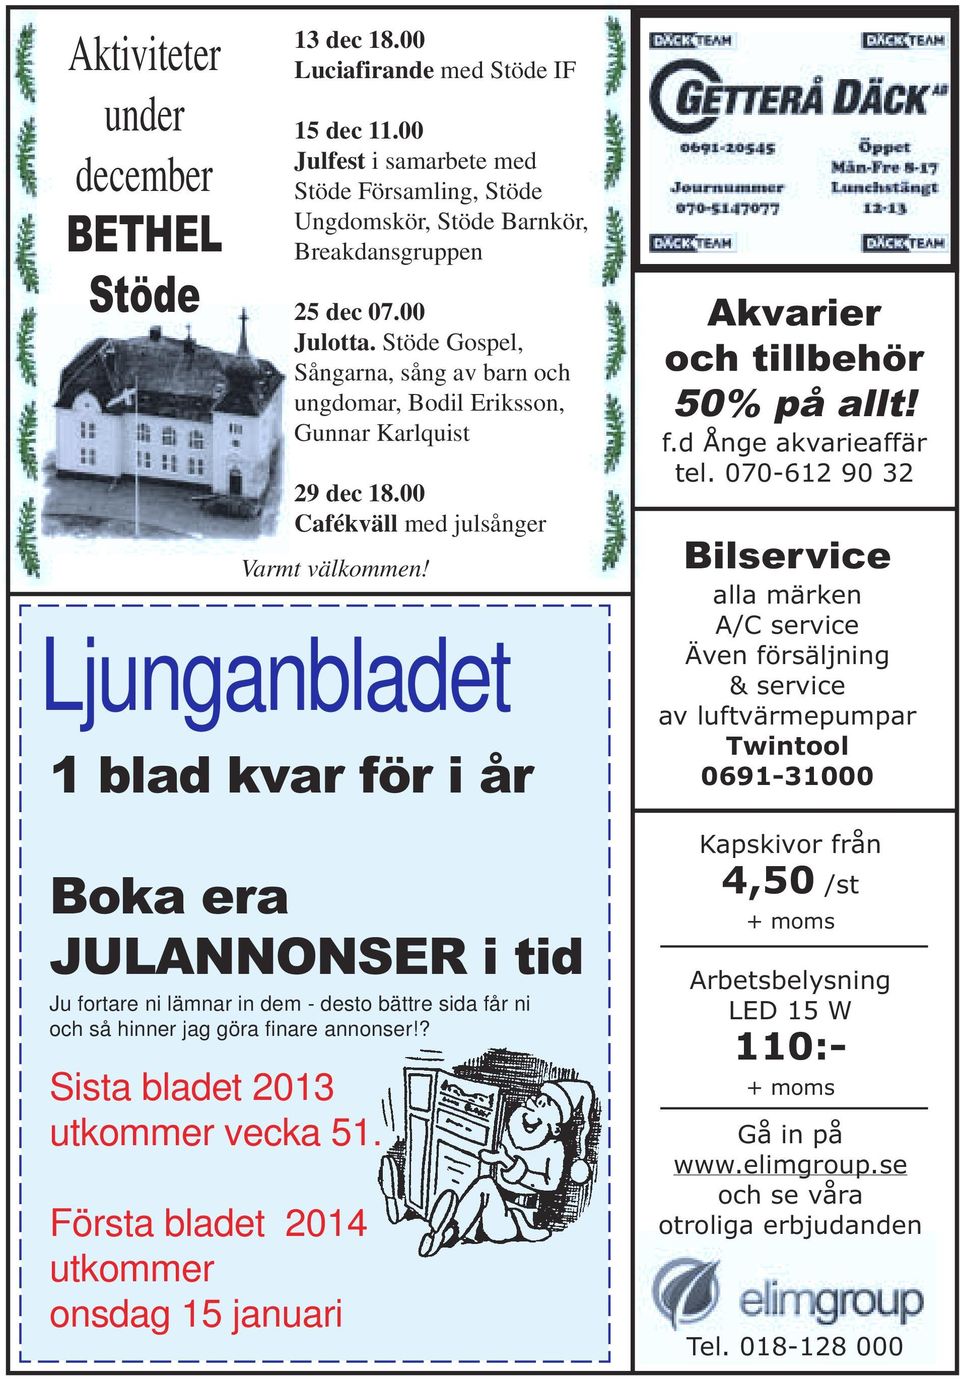 Ljunganbladet 1 blad kvar för i år Boka era JULANNONSER i tid Ju fortare ni lämnar in dem - desto bättre sida får ni och så hinner jag göra finare annonser!? Sista bladet 2013 utkommer vecka 51.